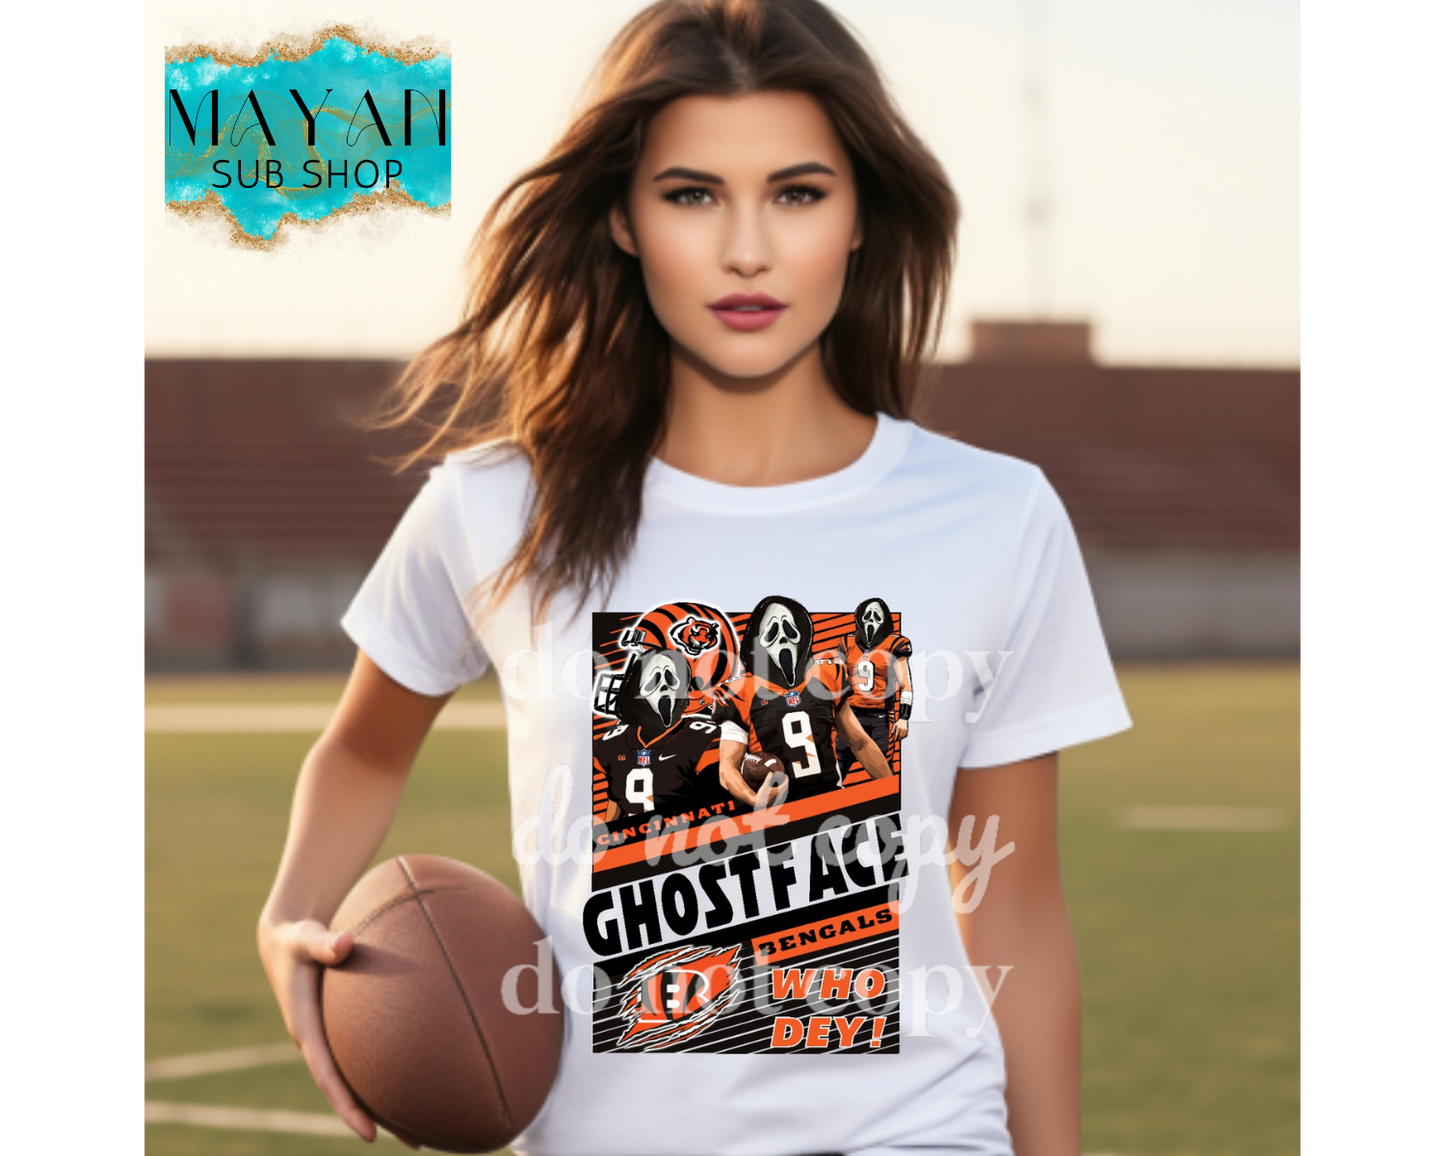 Football who dey Cincinnati shirt. -Mayan Sub Shop